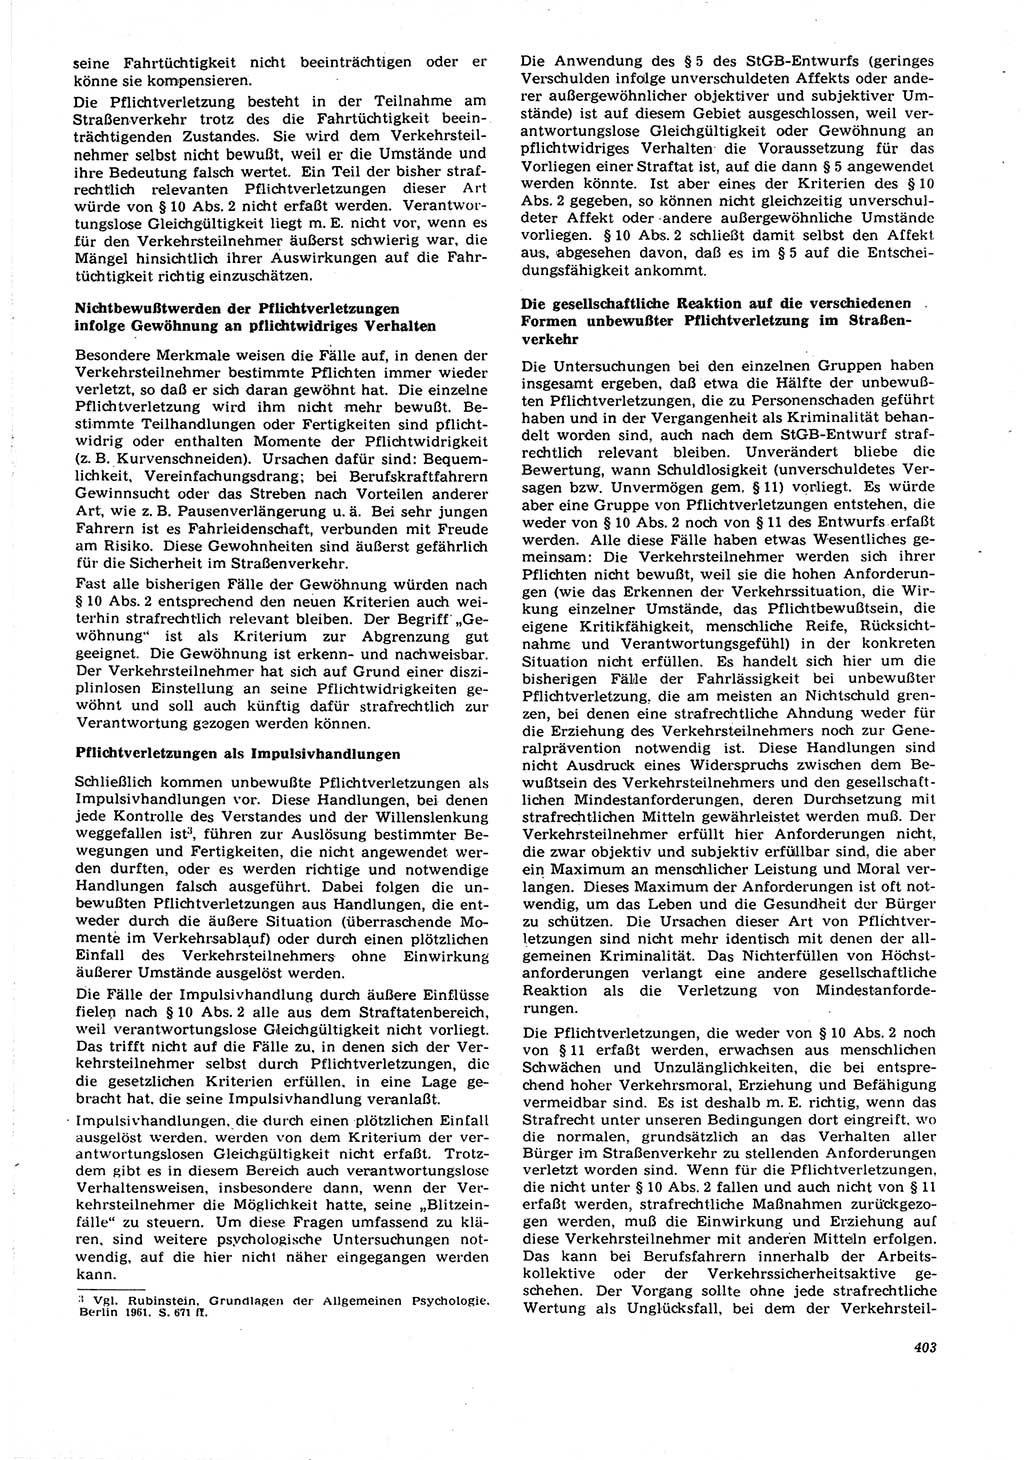 Neue Justiz (NJ), Zeitschrift für Recht und Rechtswissenschaft [Deutsche Demokratische Republik (DDR)], 21. Jahrgang 1967, Seite 403 (NJ DDR 1967, S. 403)